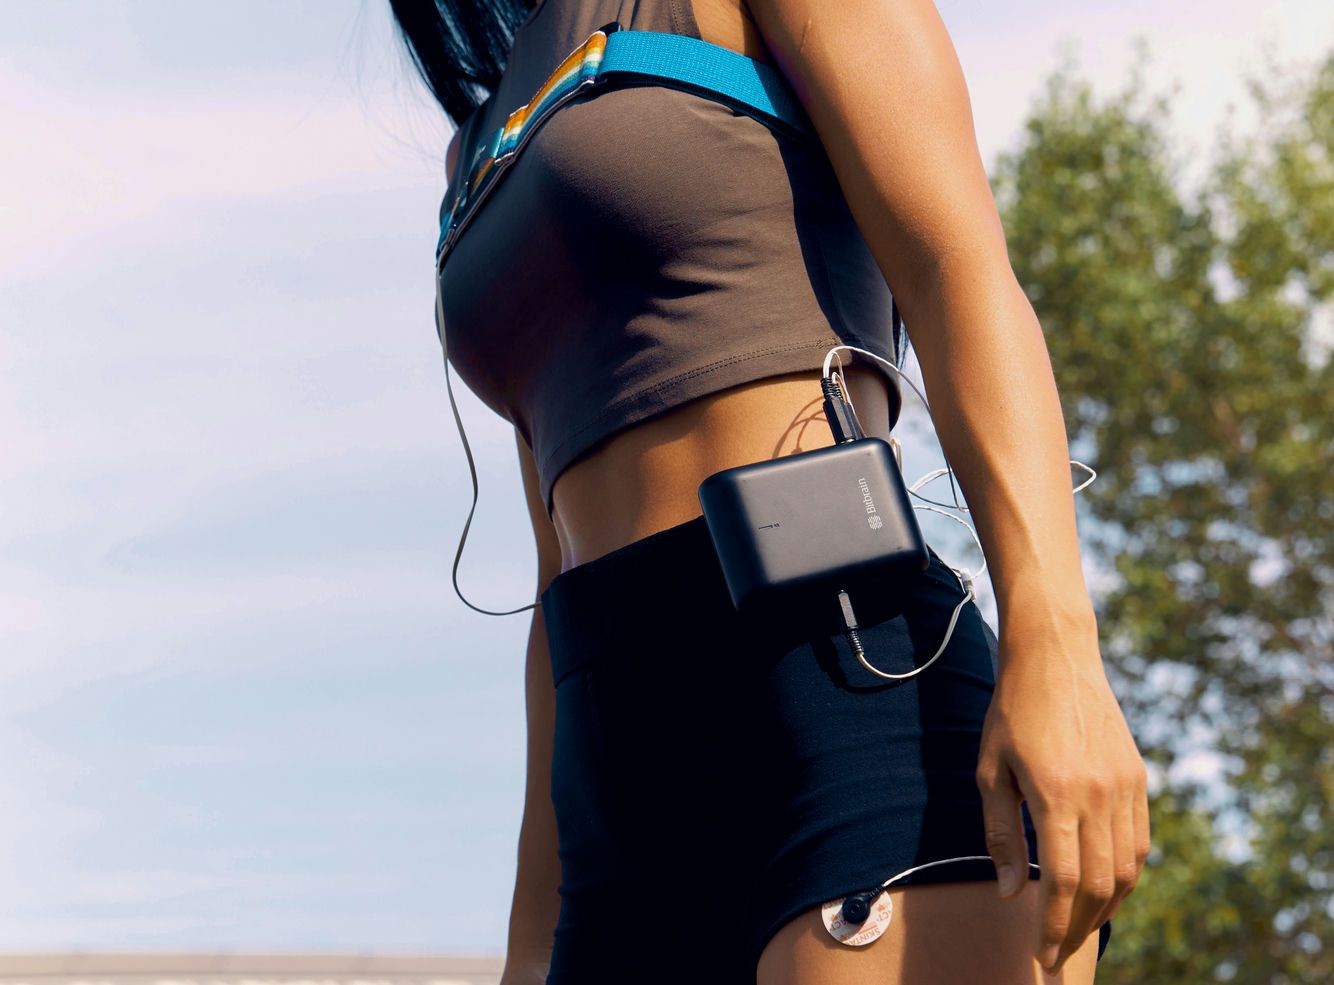 Mujer caminando con el amplificador de bioseñales en la cintura